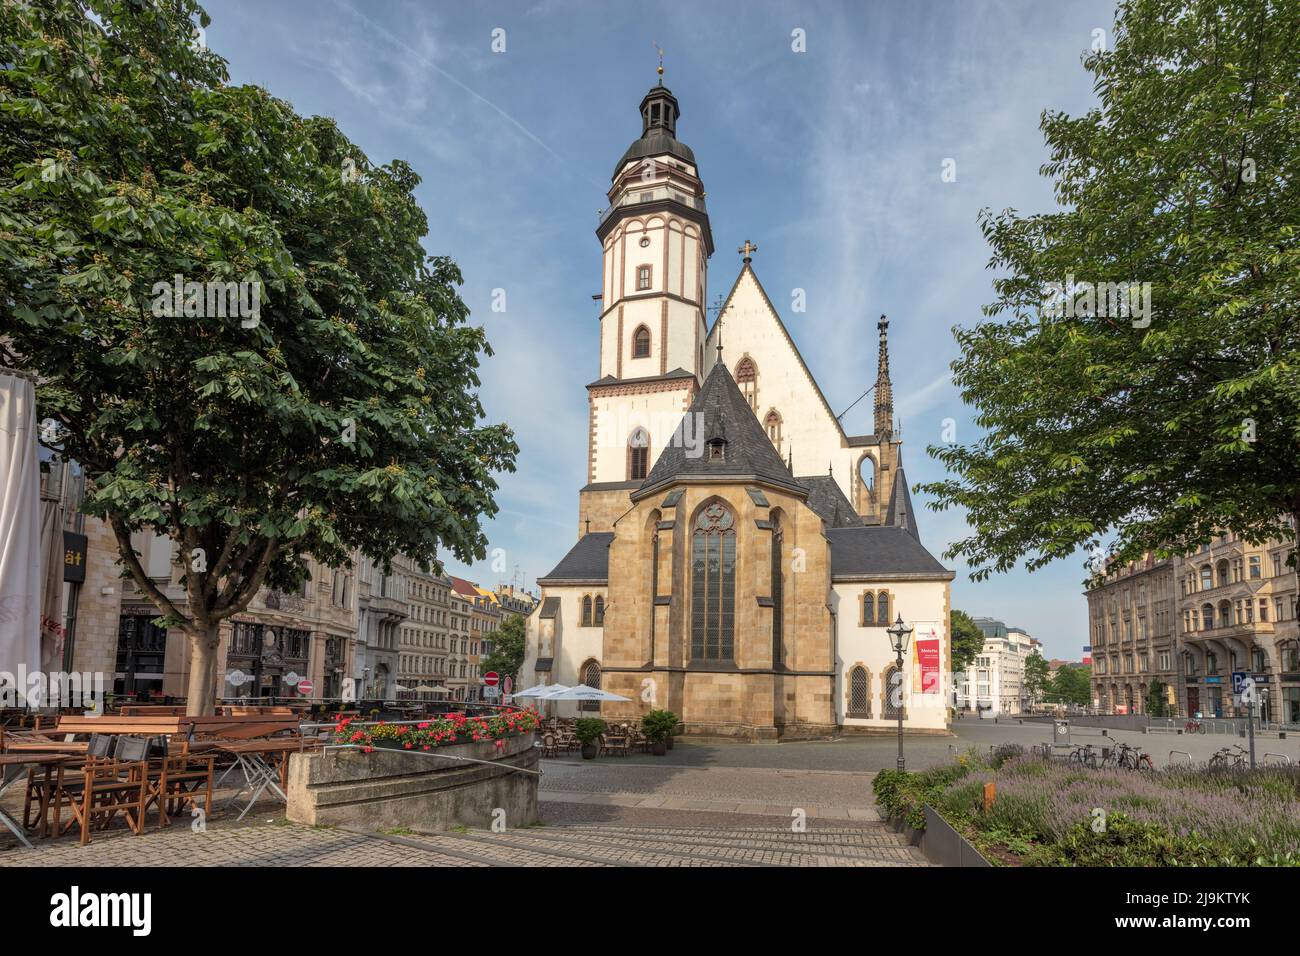 Thomas-Kirche, Thomaskirche, eine gotische romanische Lutherische Kirche aus dem 12. Jahrhundert. Grabstätte von Johann Sebastian Bach in Leipzig Stockfoto